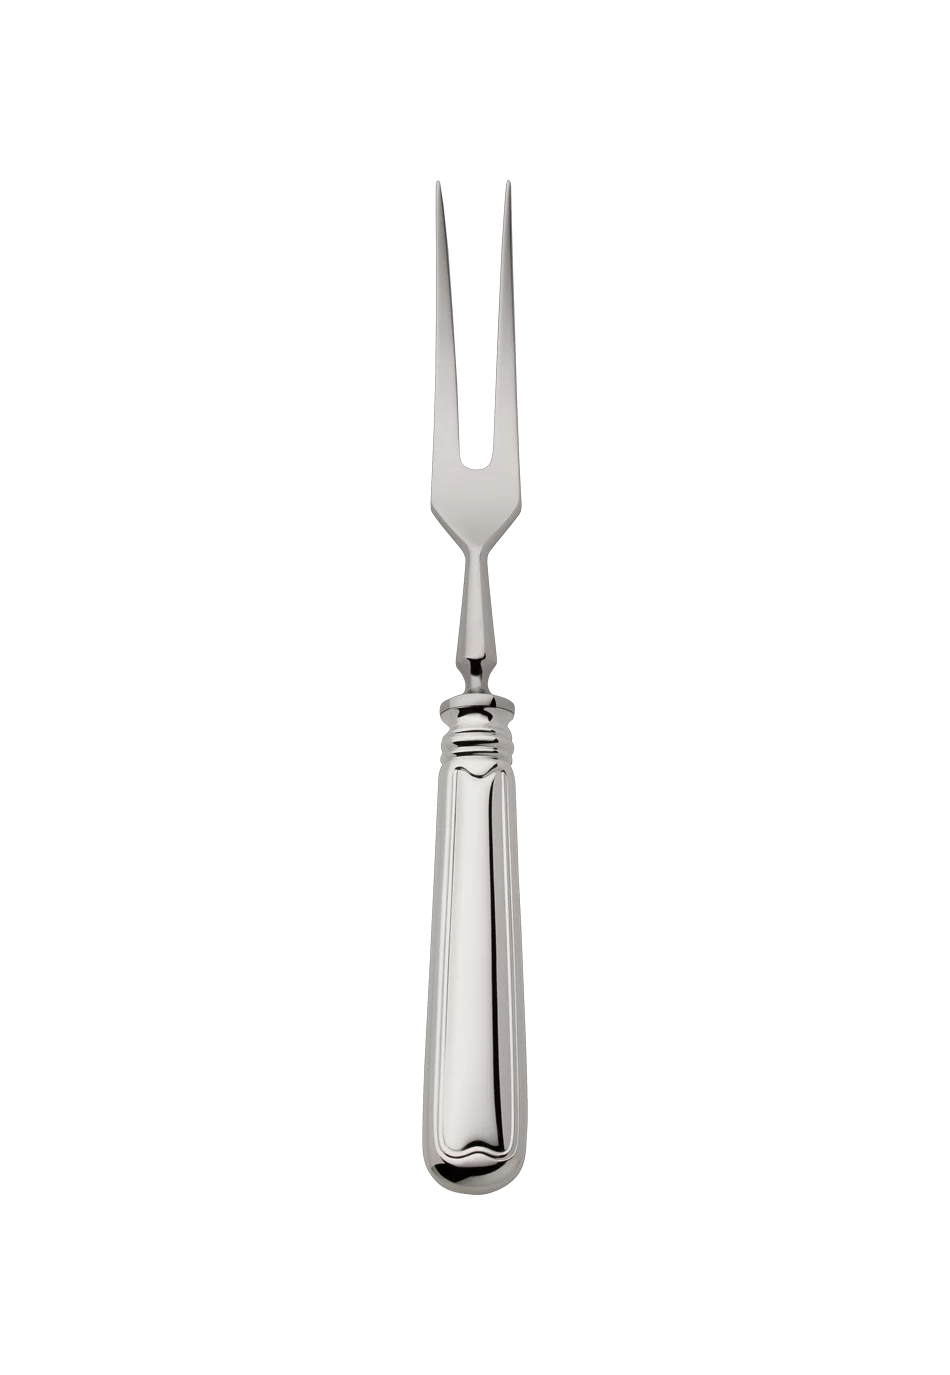 Alt-Faden Carving Fork (925 Sterling Silver)